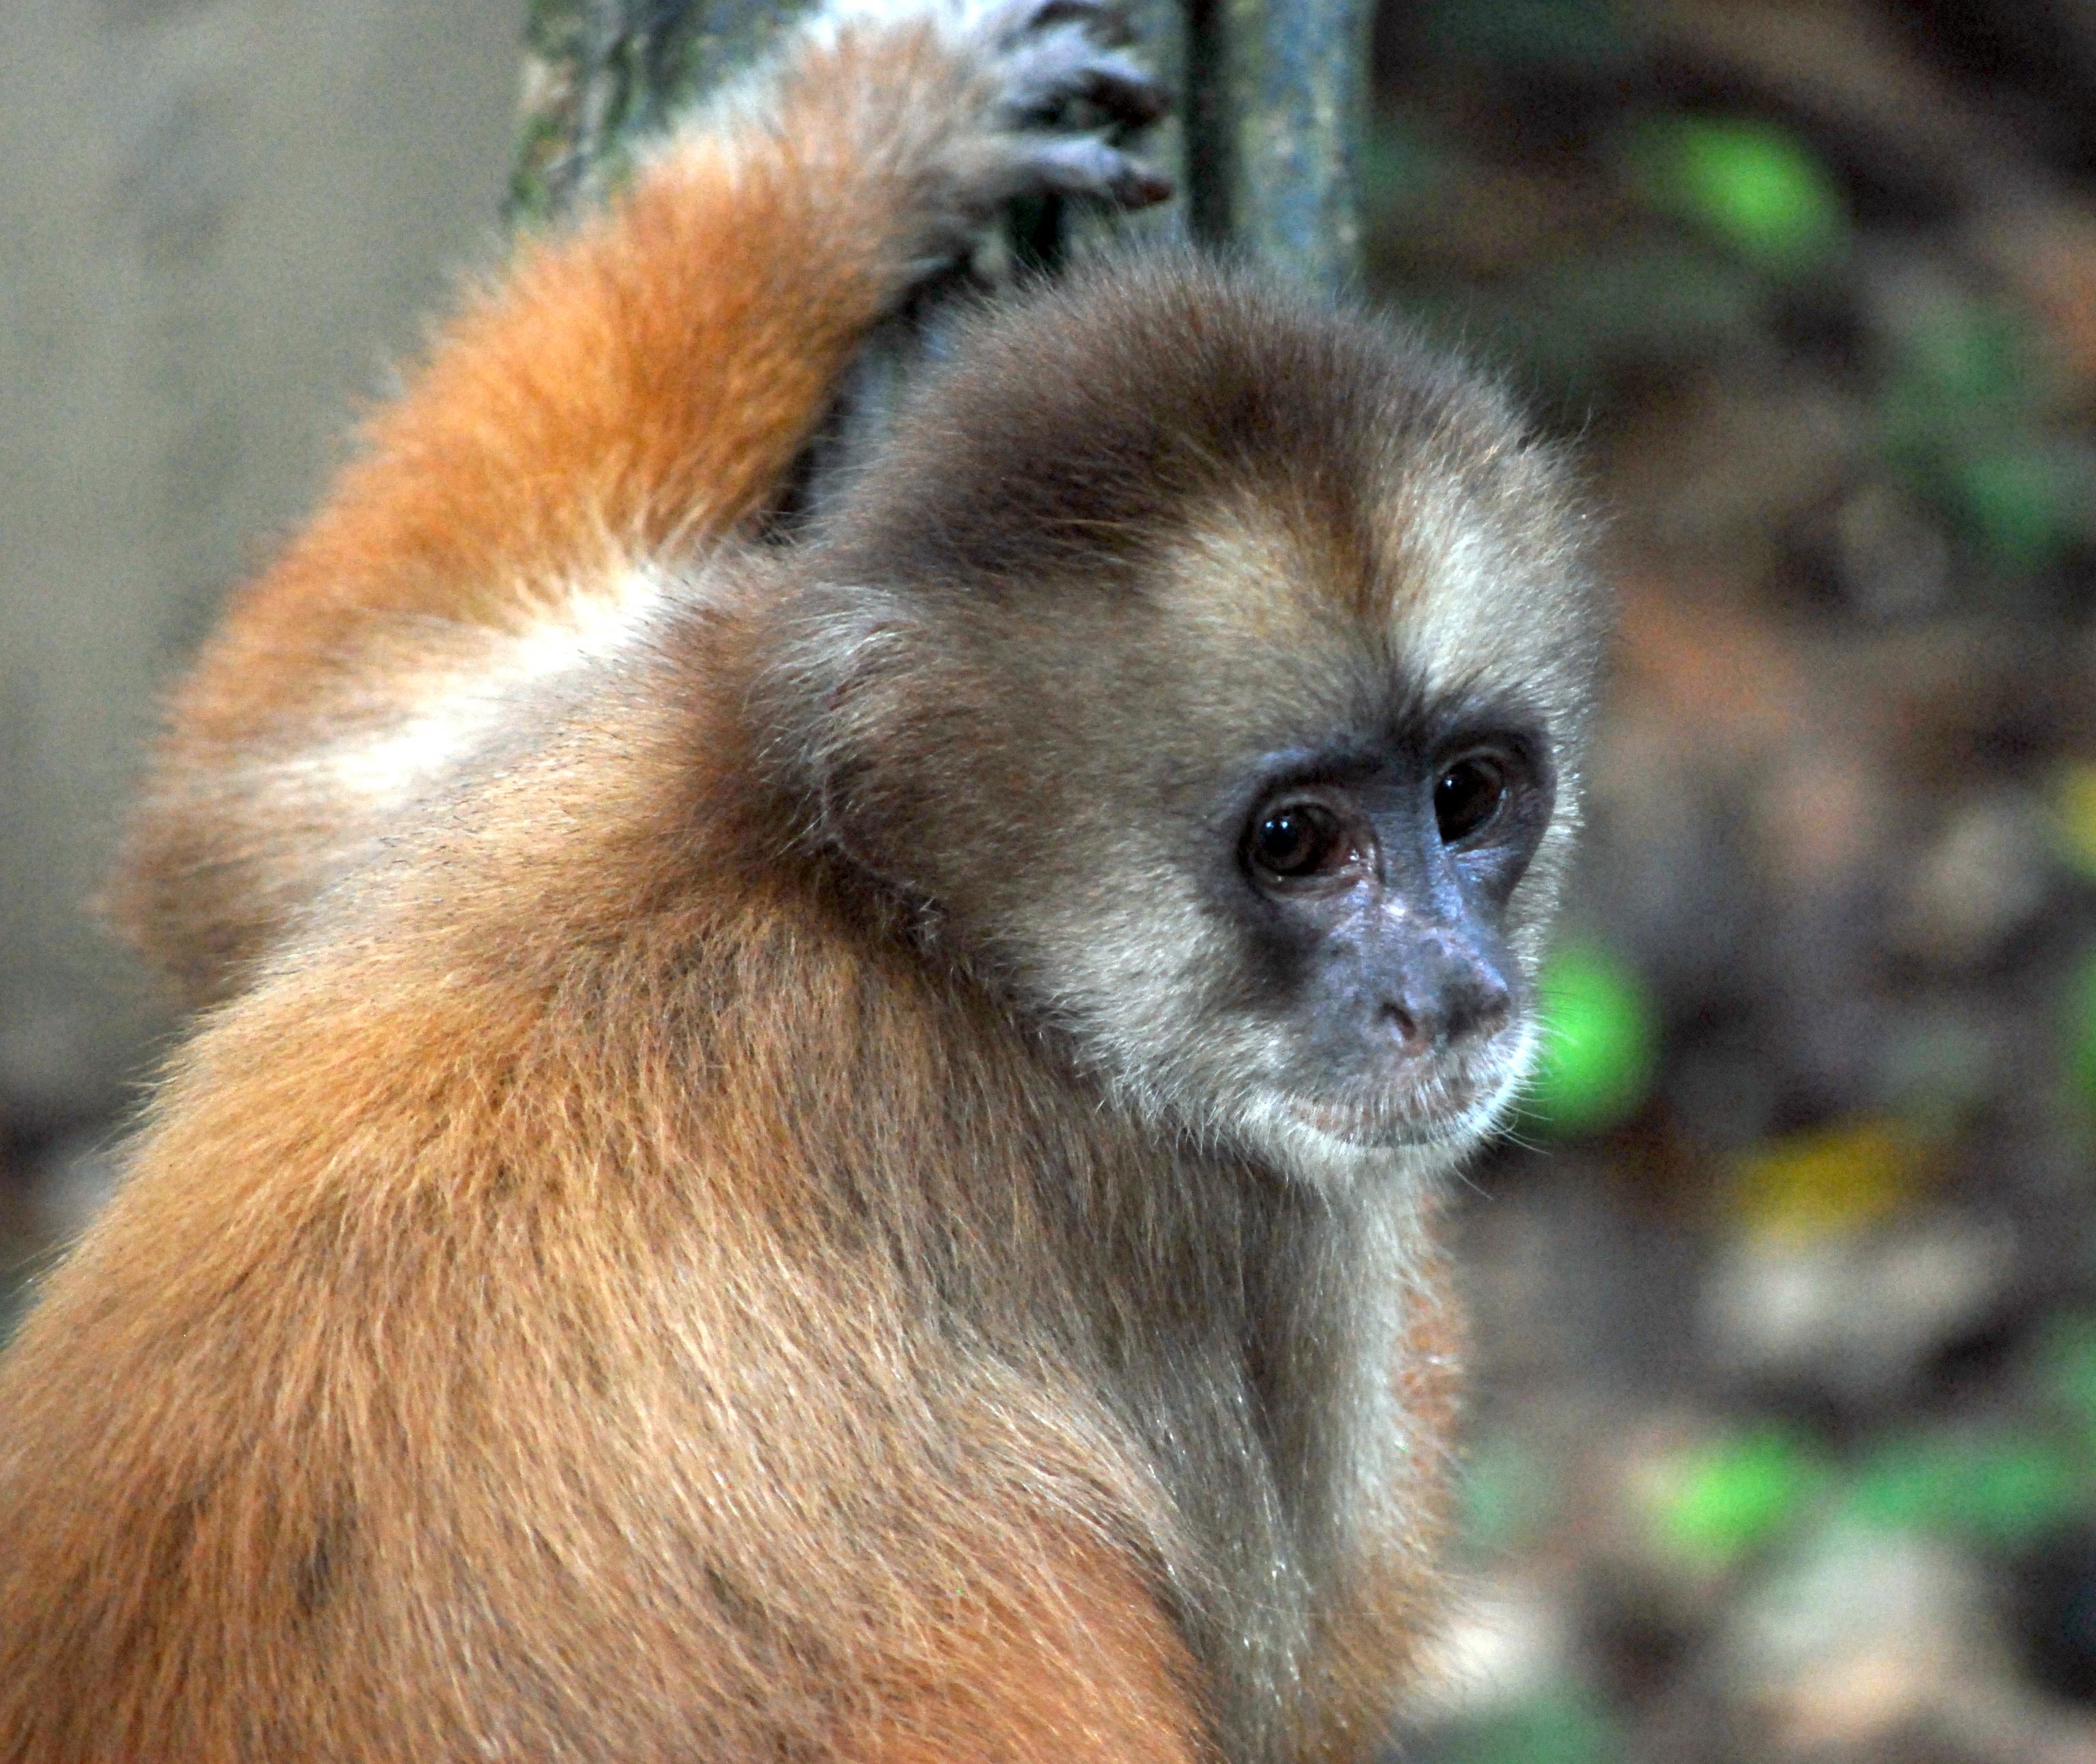 Fernreiseziele mit Kindern im Sommer - Tipps für Fernreisen im Sommer mit Kindern - Affe im Amazonas